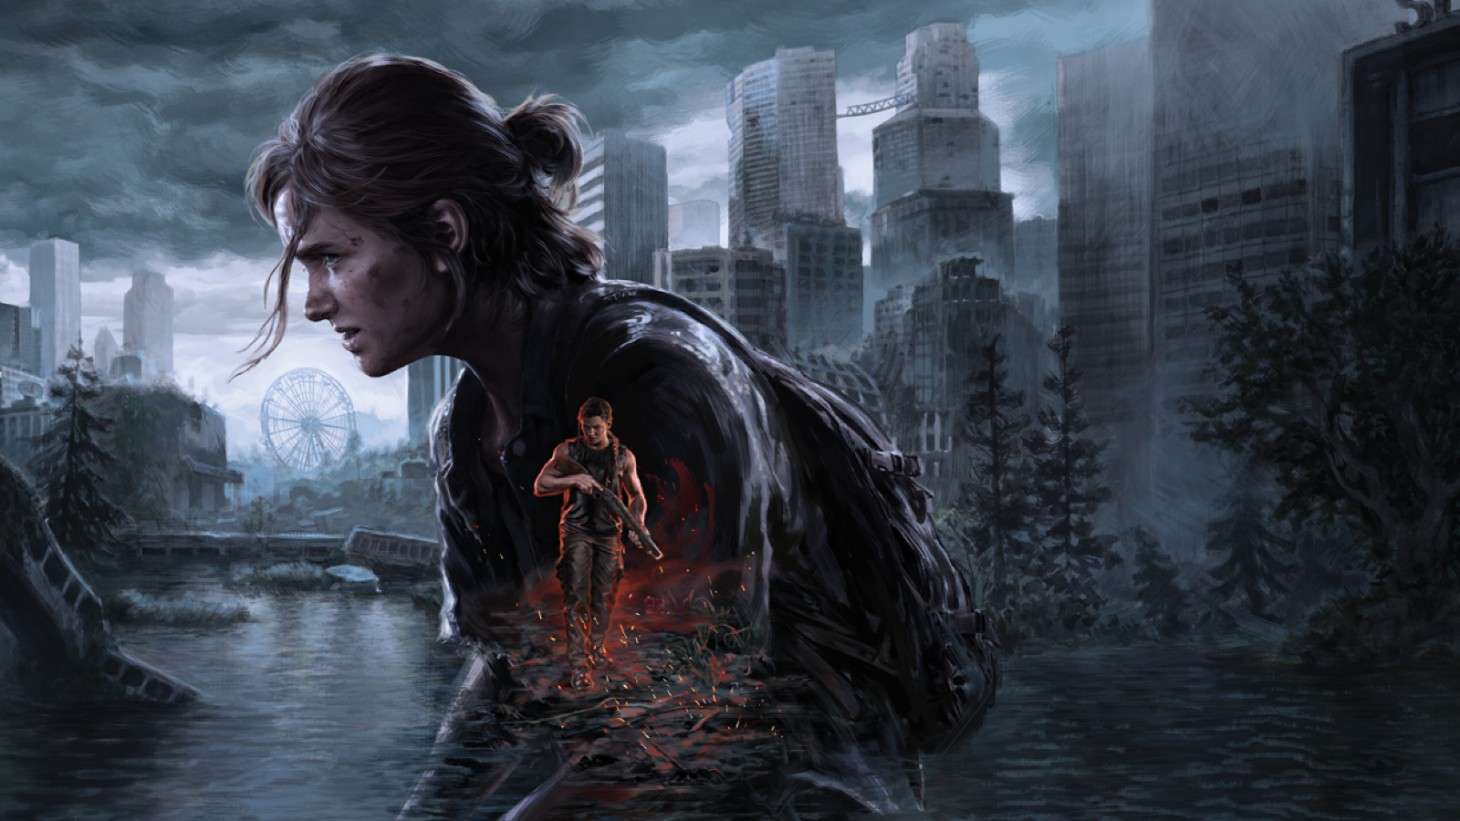 Обновление 1.1.0 для The Last of Us Part II Remastered с новыми скинами и исправлениями ошибок